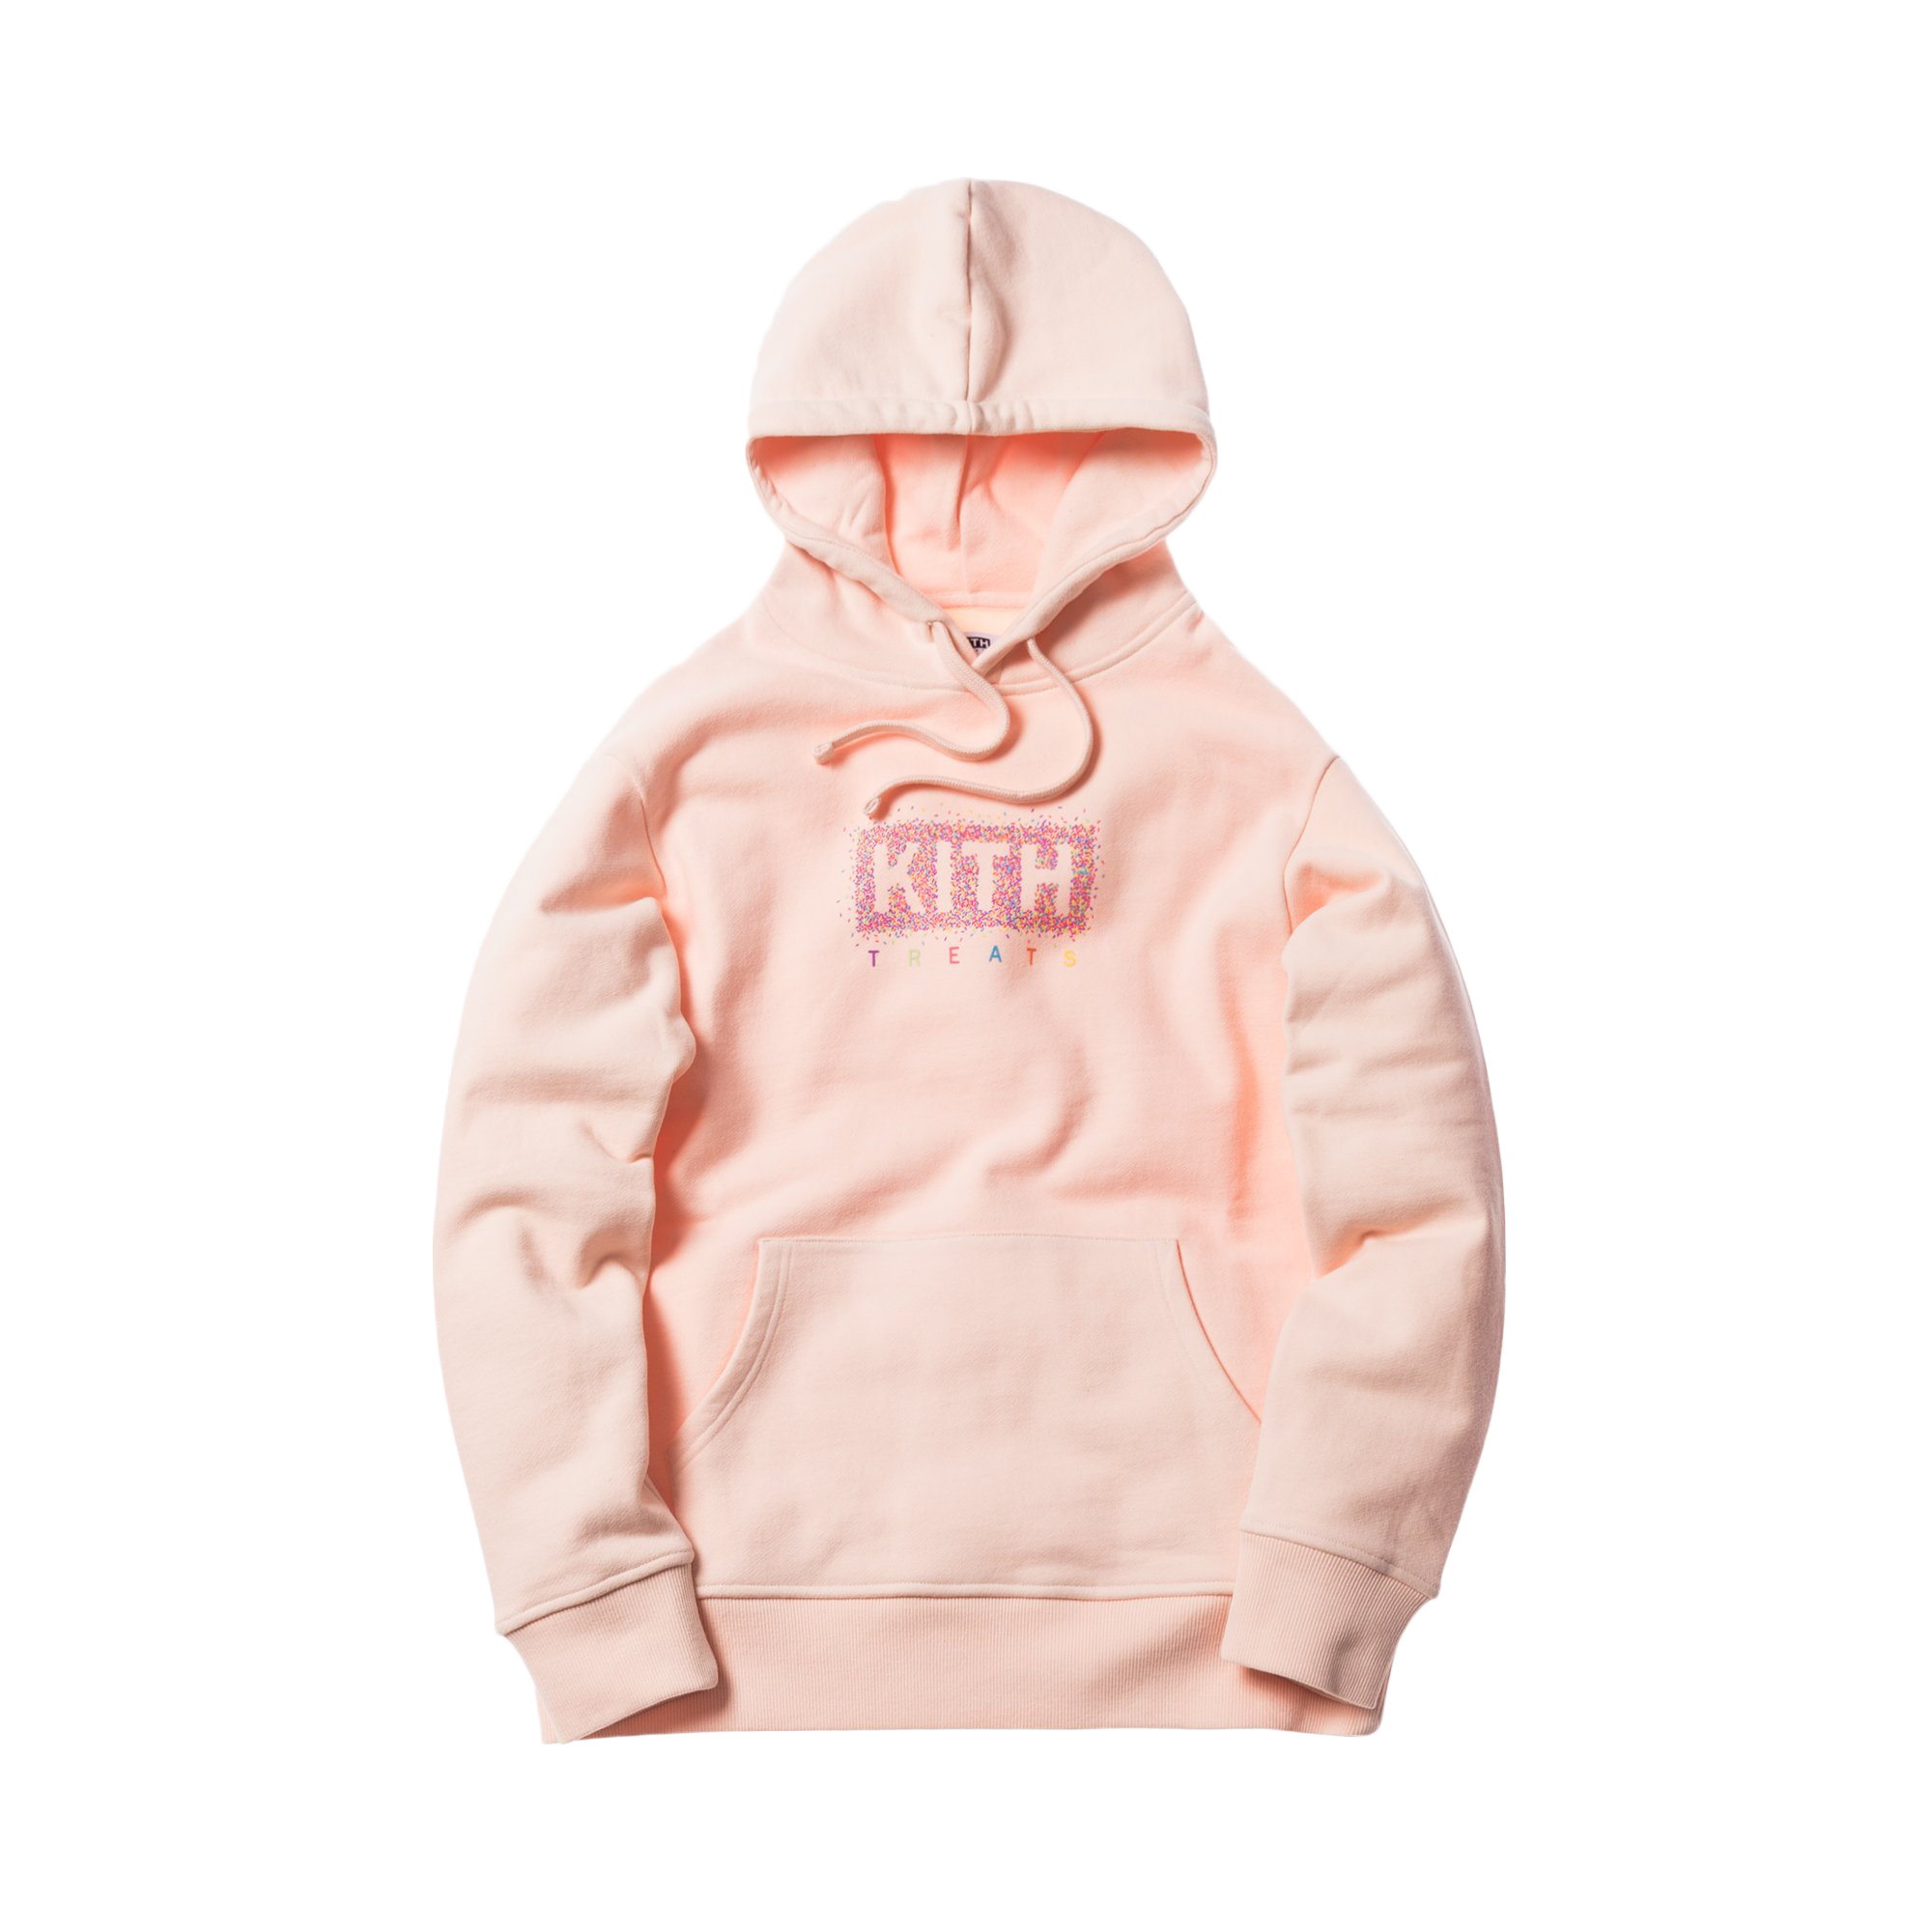 Kith treats rose hoodieパーカー